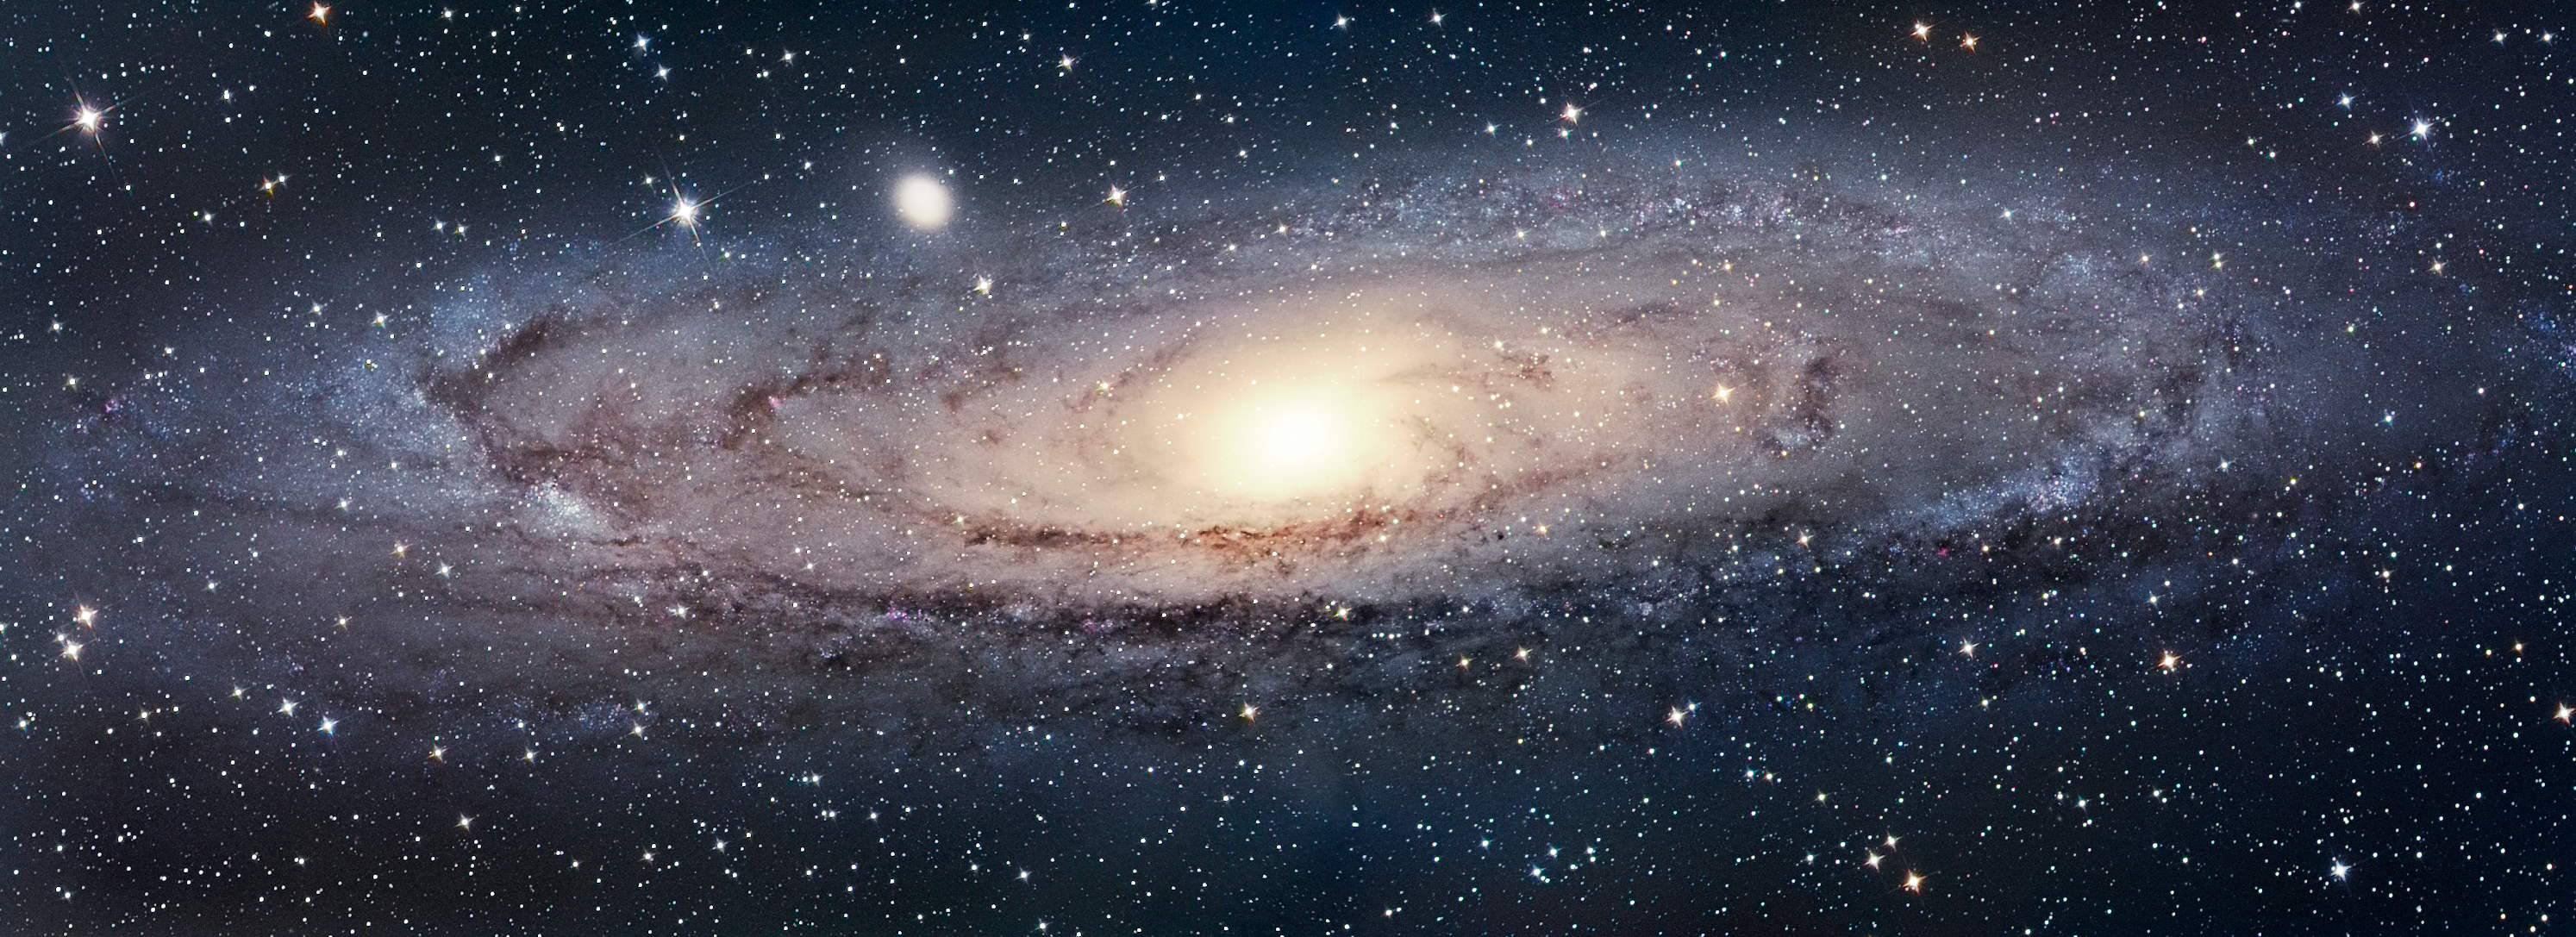 fondo de pantalla de galaxy gratis,galaxia,galaxia espiral,atmósfera,cielo,espacio exterior